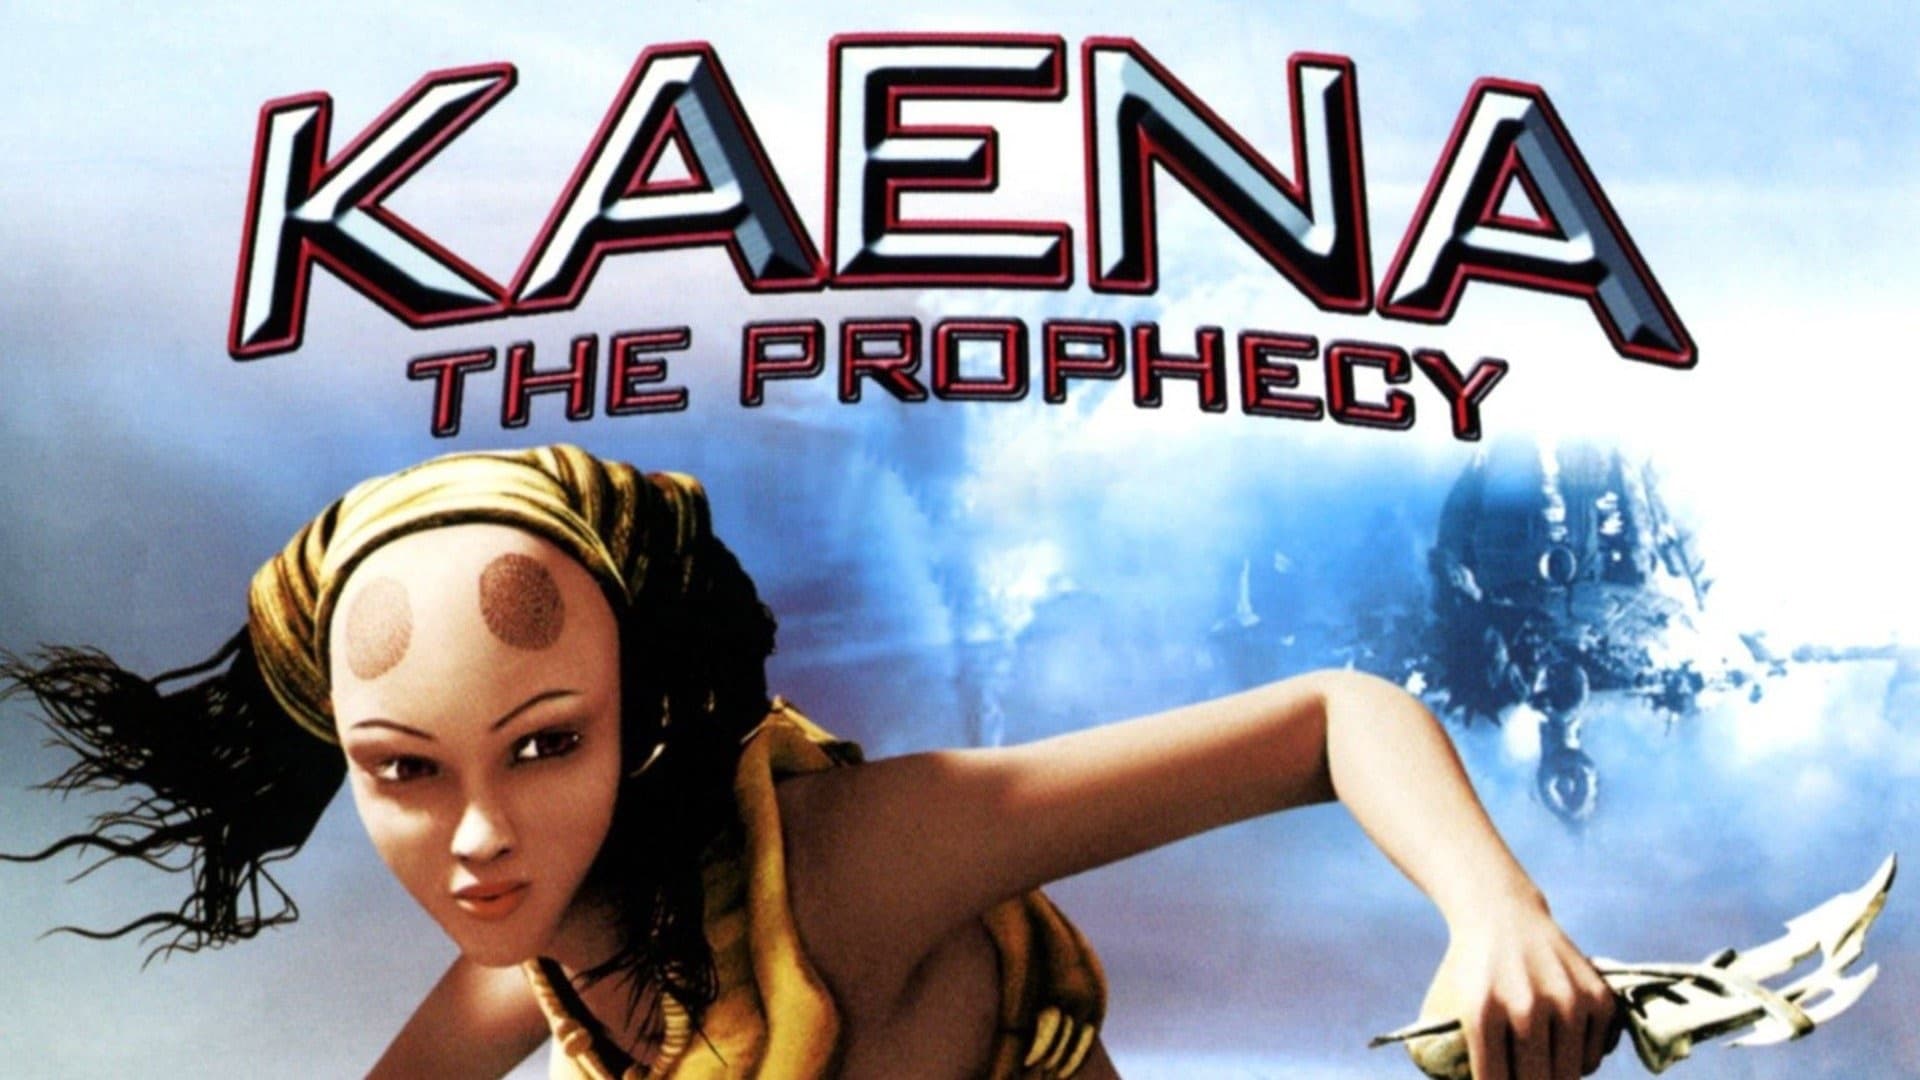 Kaena, la prophétie (2003)